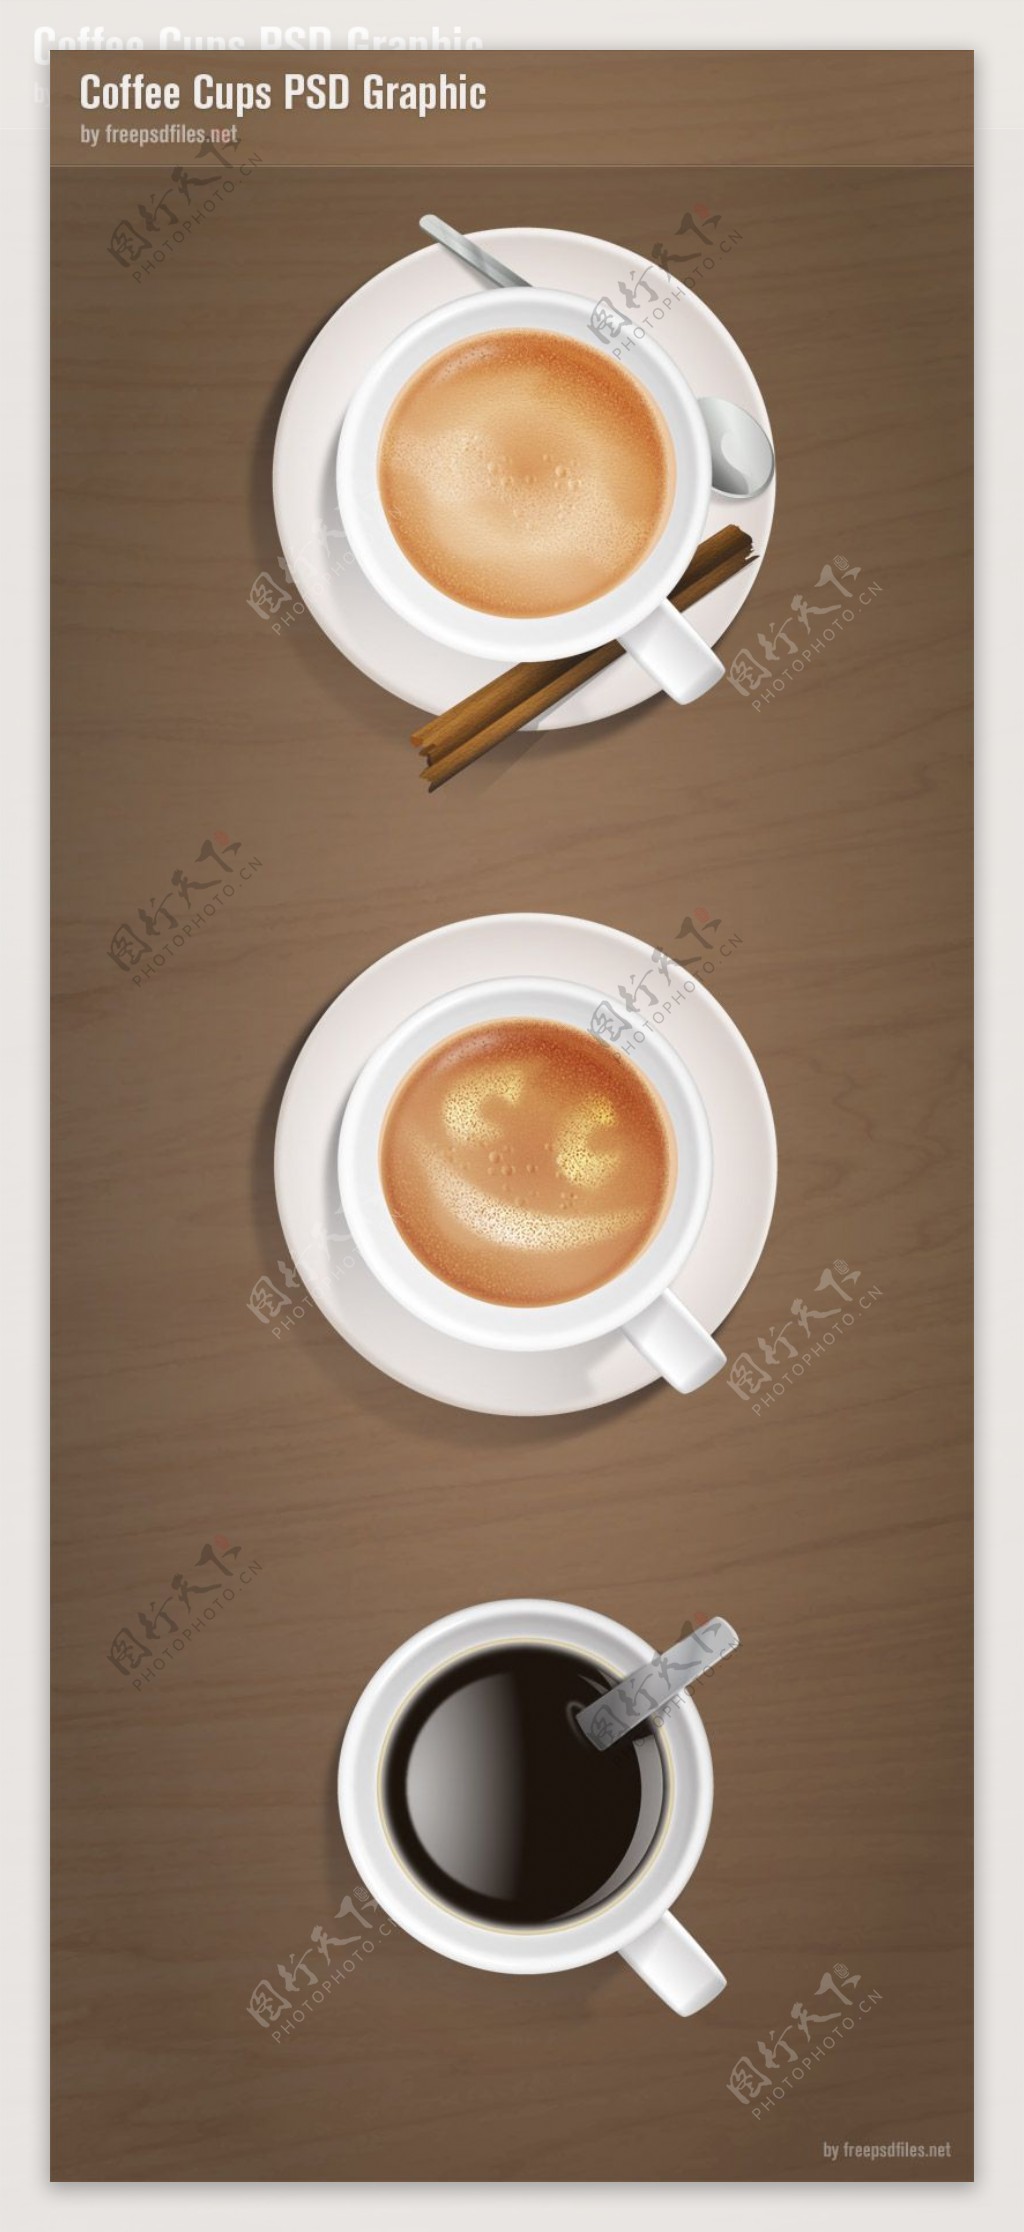 3款咖啡设计PSD分层素材